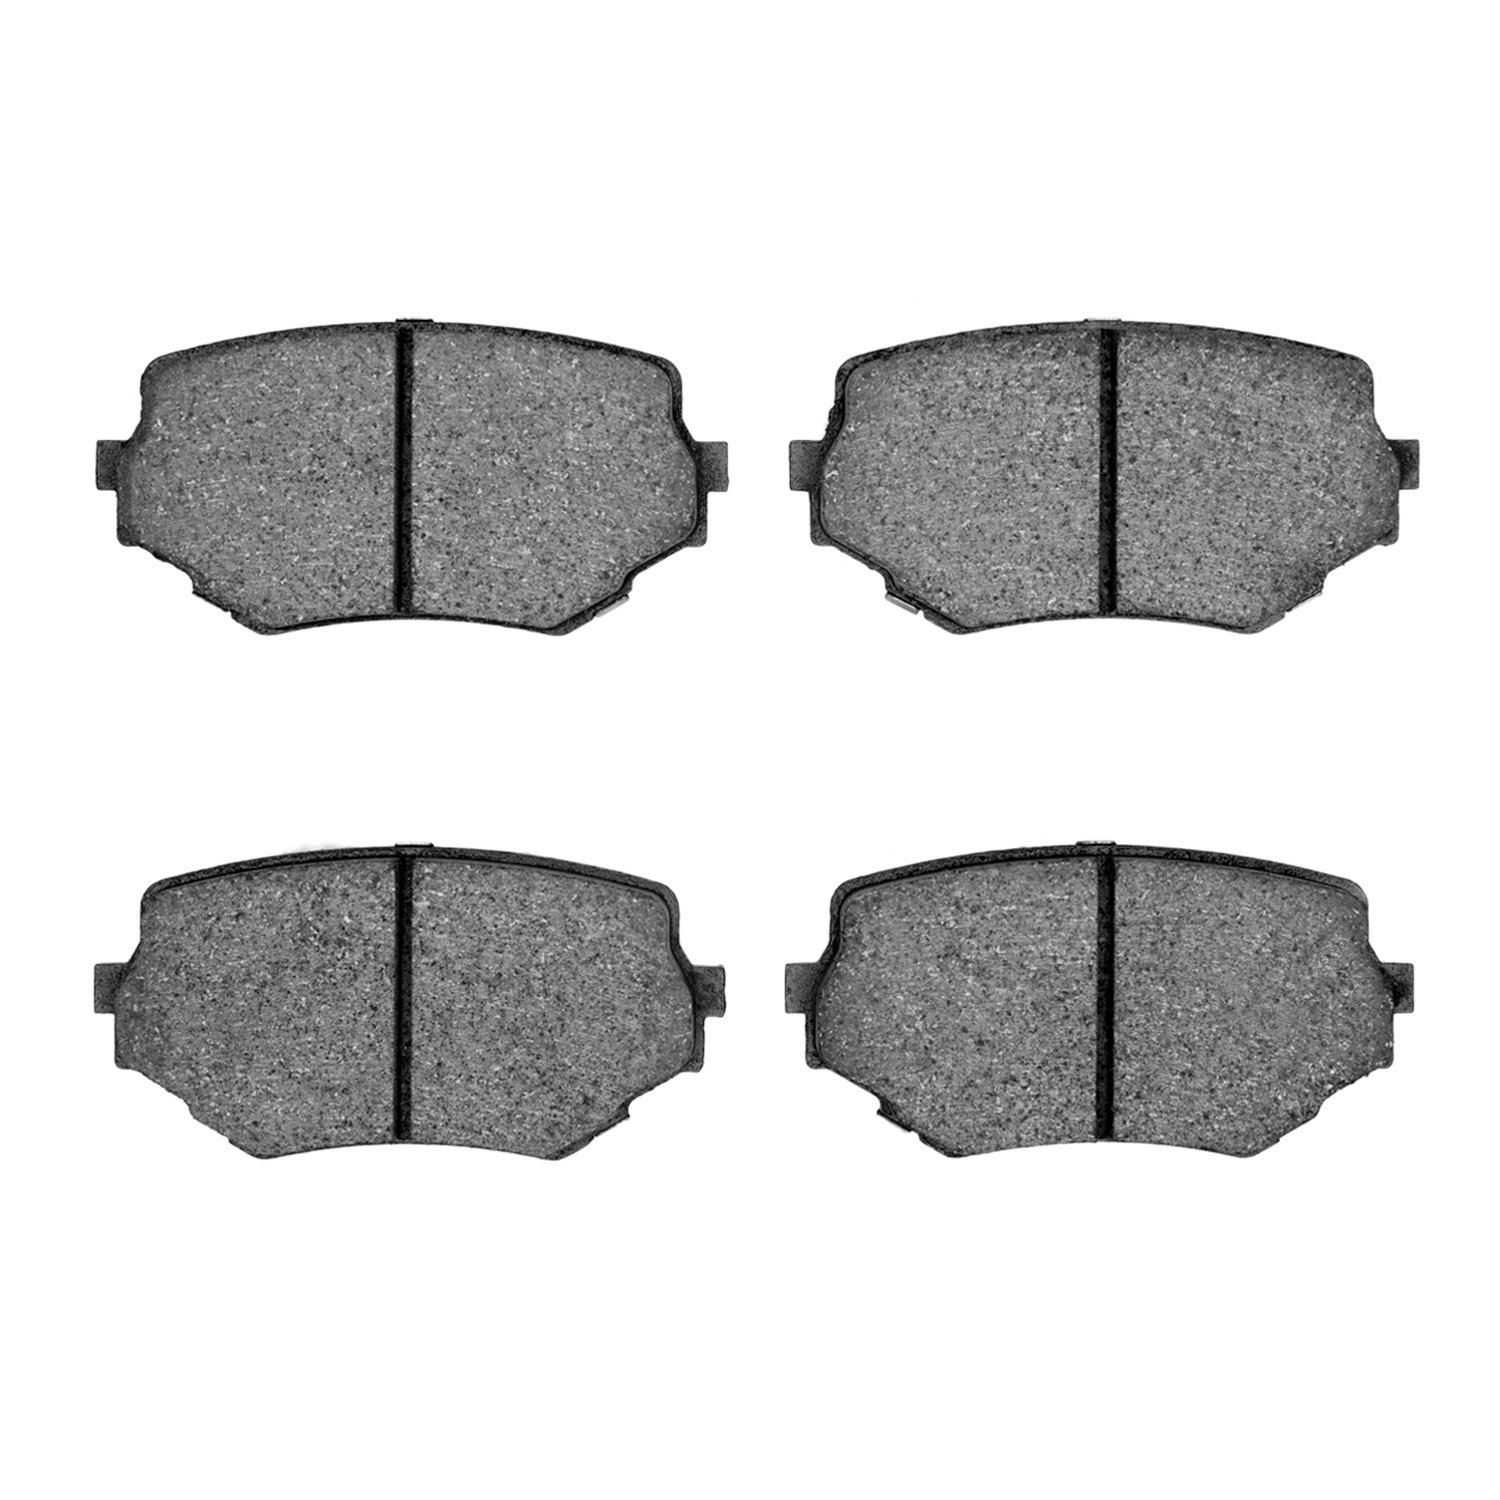 Ceramic Brake Pads, 1996-2008 Fits Multiple Makes/Models, Position: Front